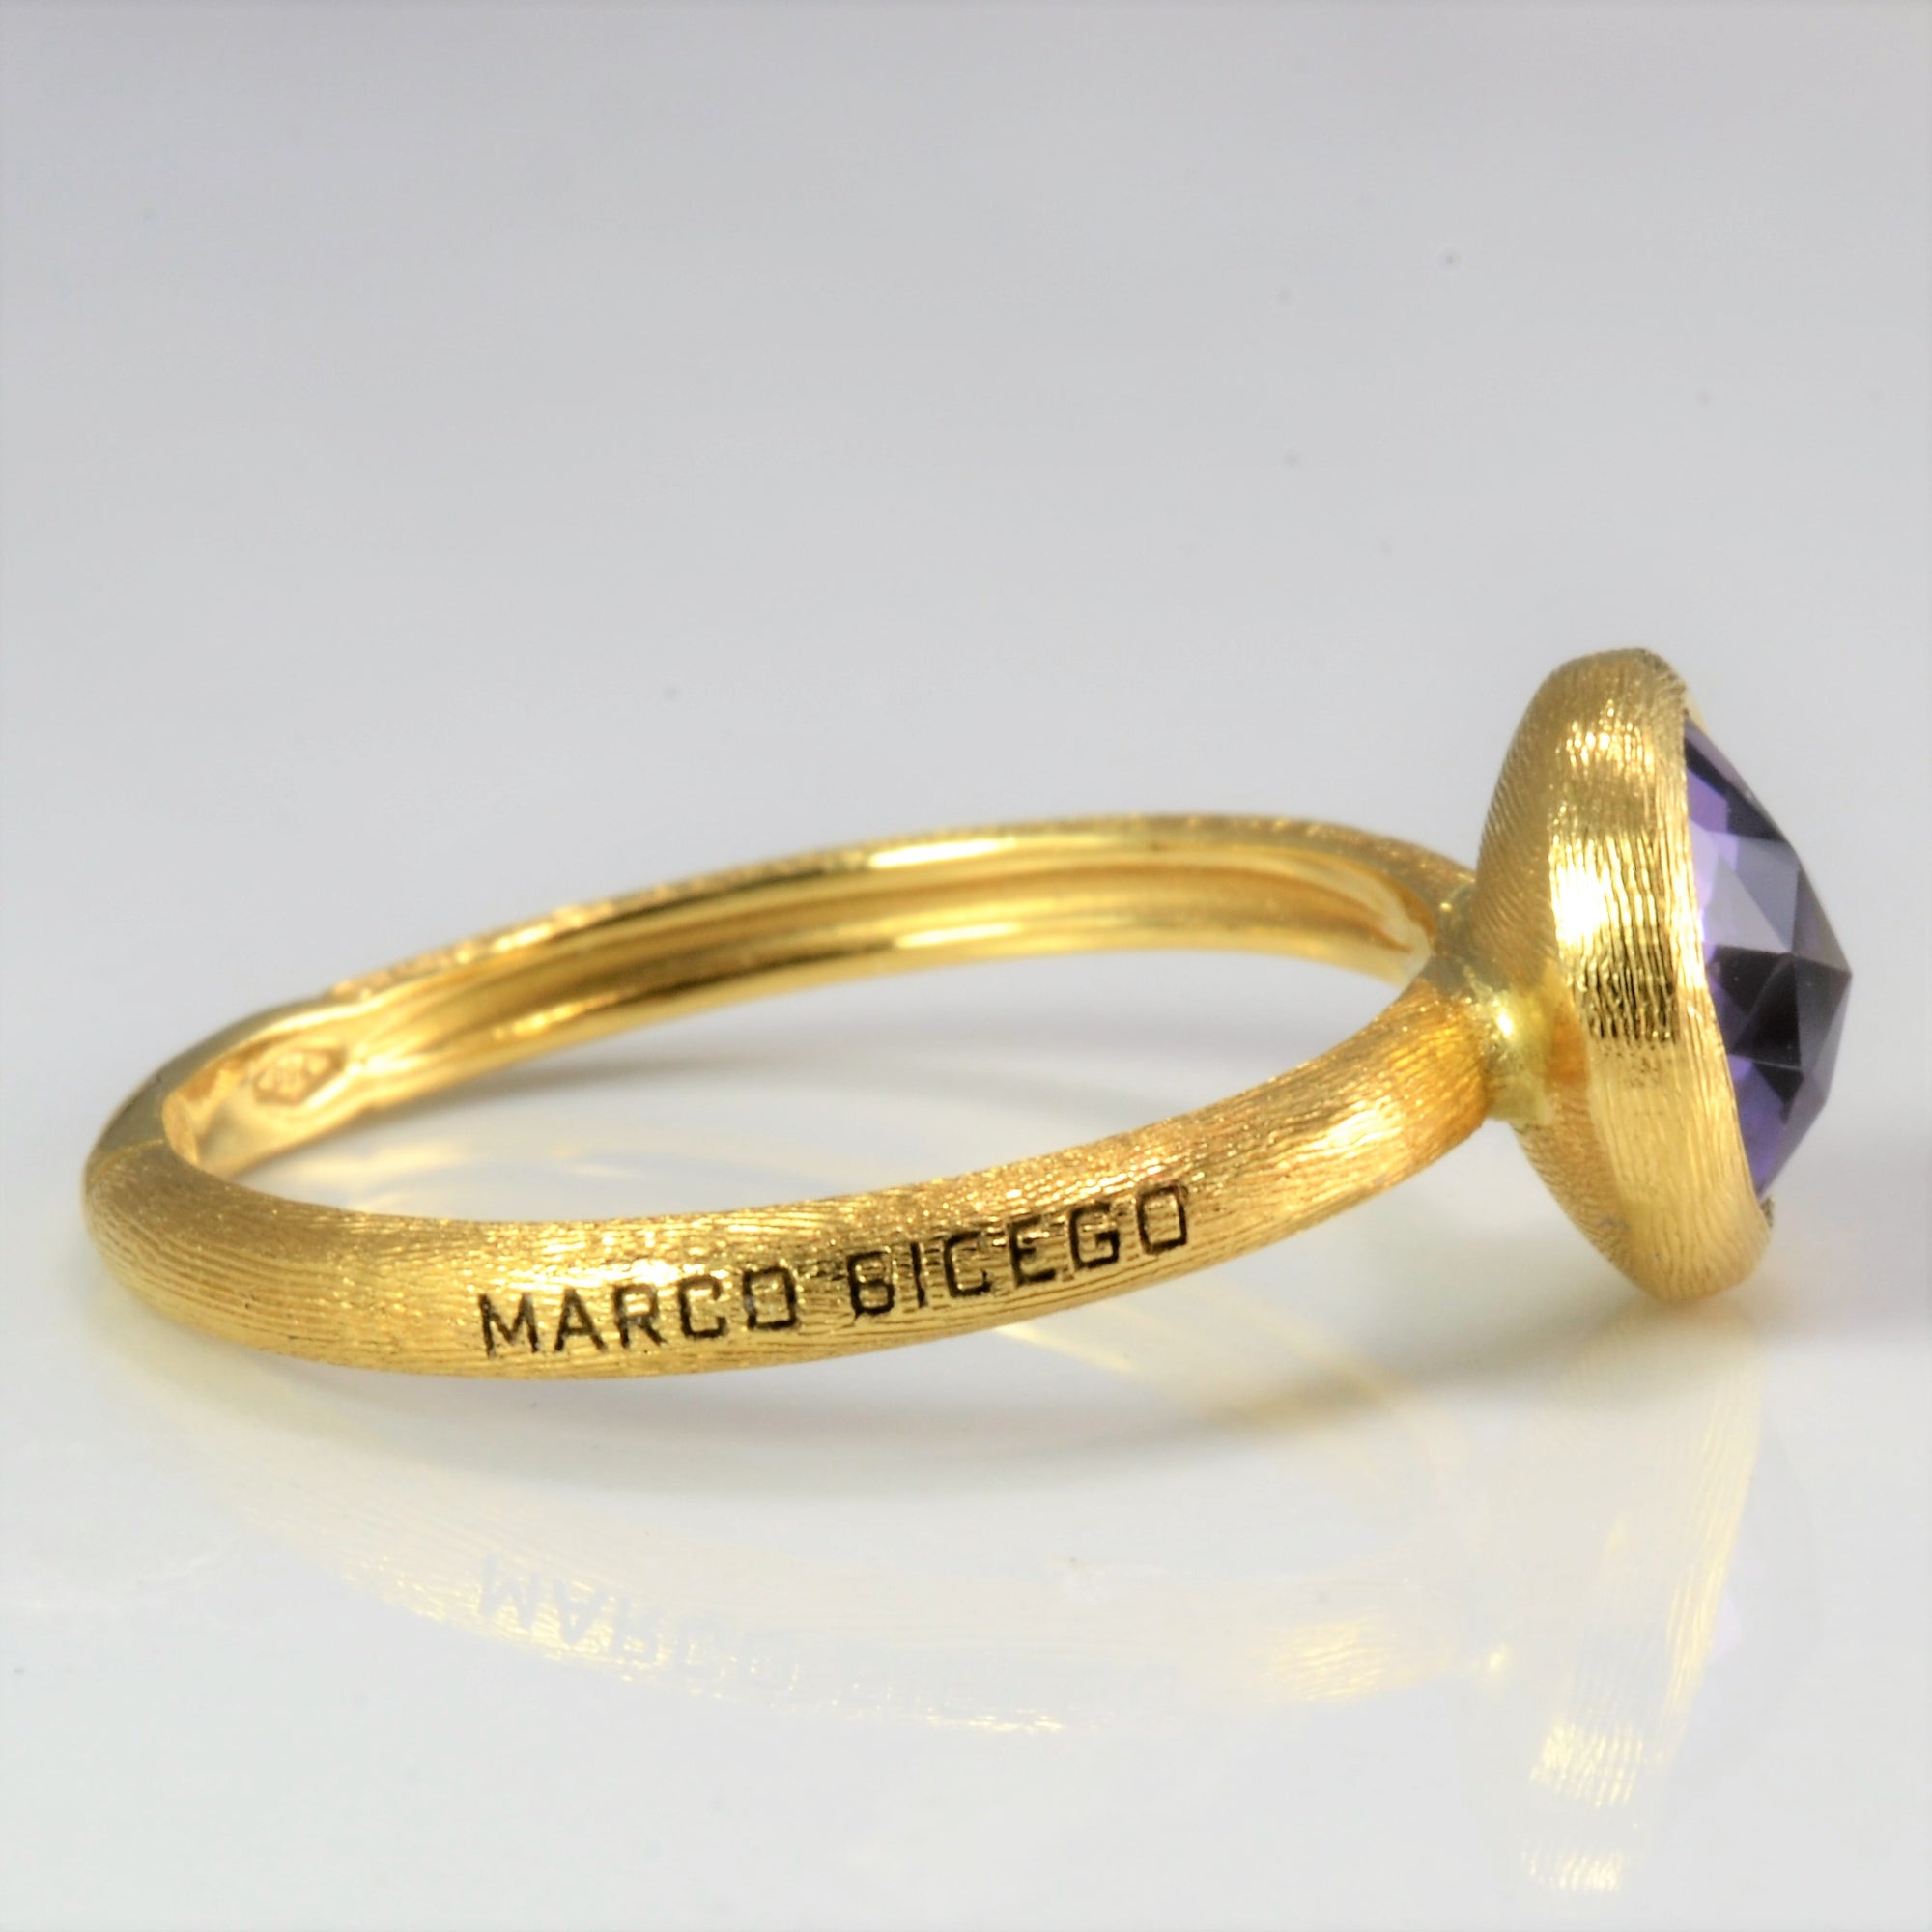 Marco Bicego' Bezel Set Amethyst Ring | SZ 4.5 |